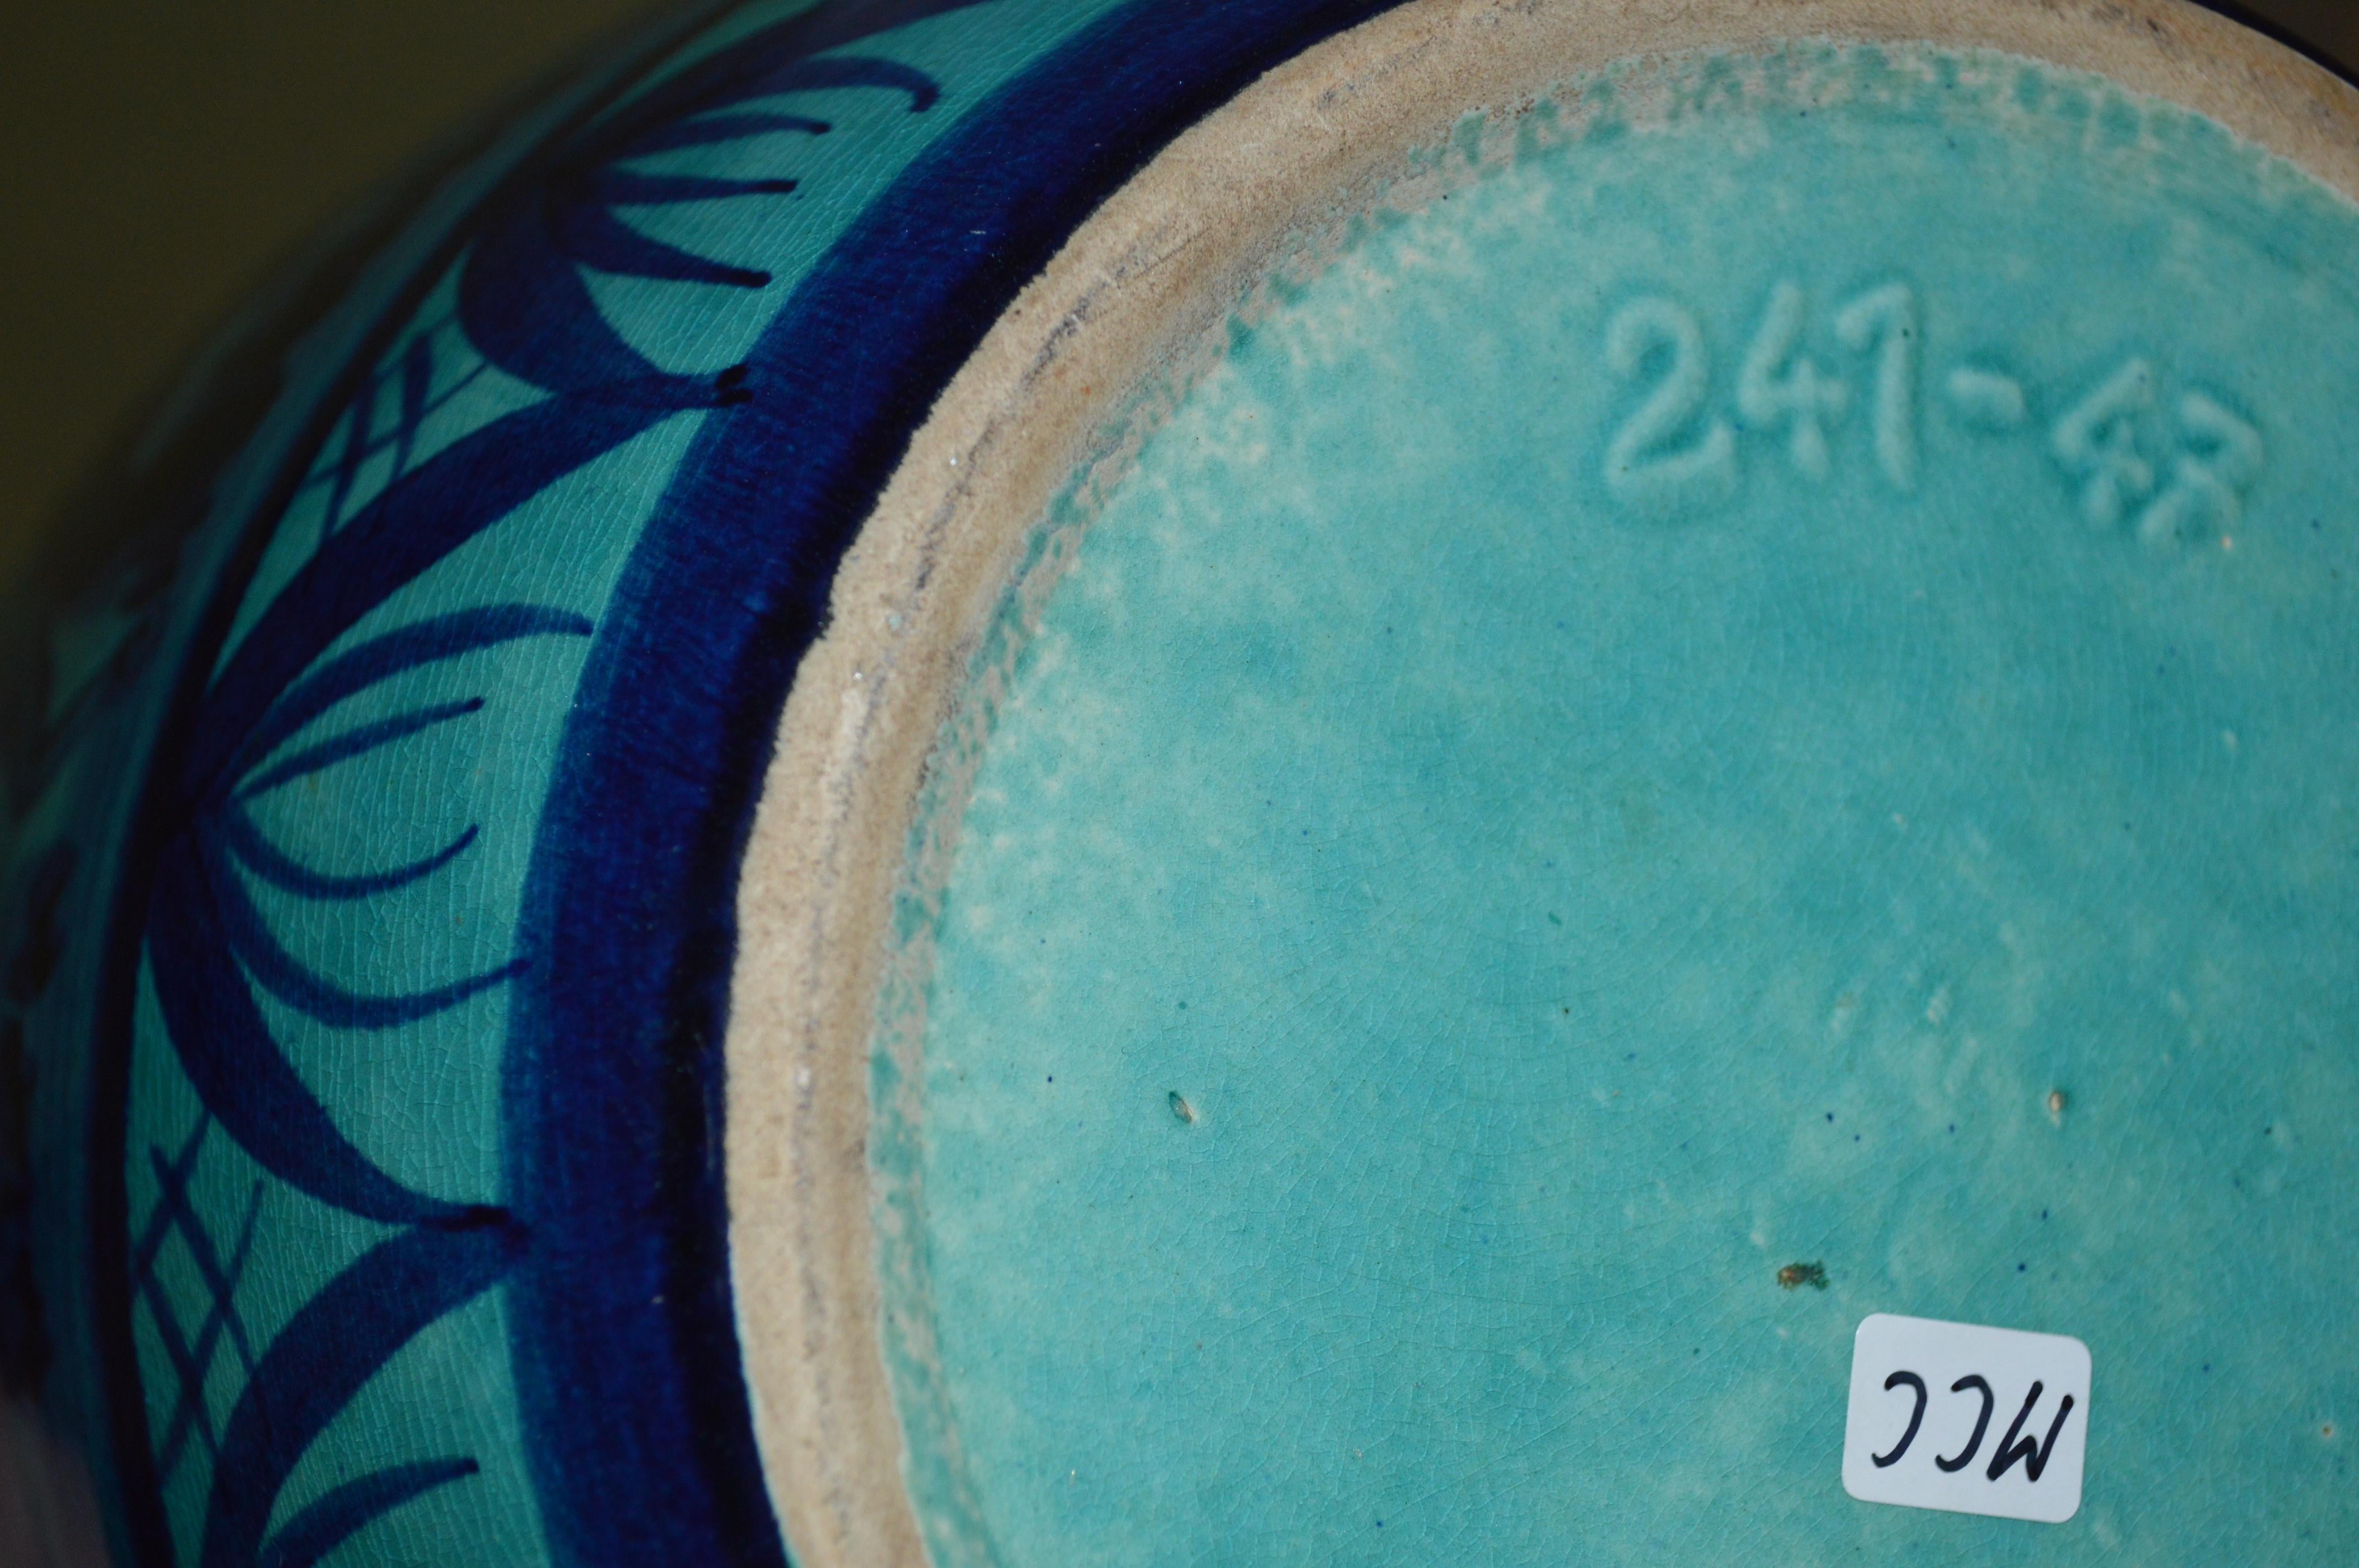 Large Blue Porcelain Floor Vase With Hunting Motive 